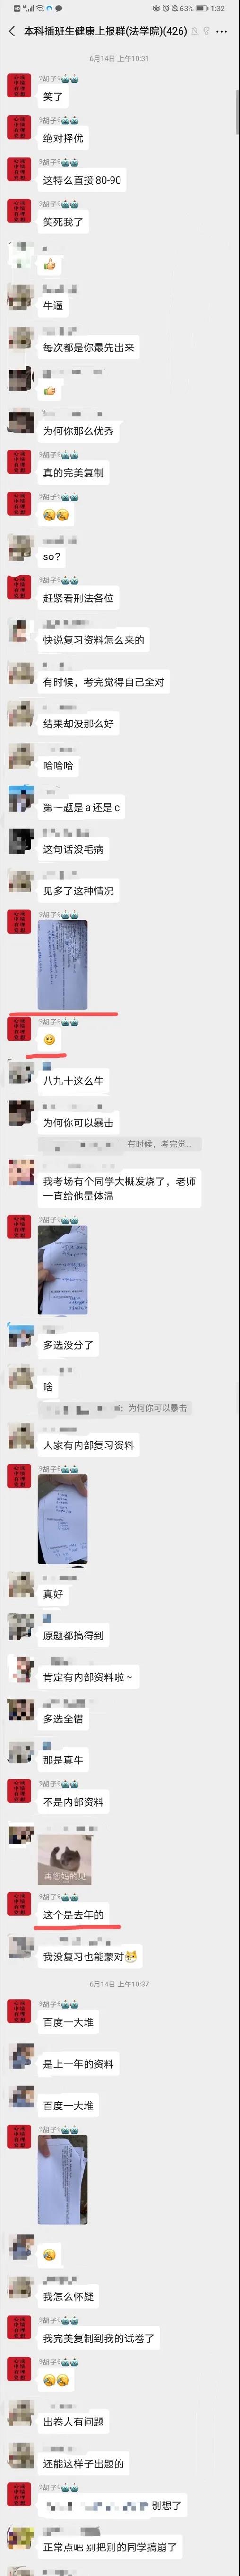 广东专插本考试作弊有理，不作弊傻X